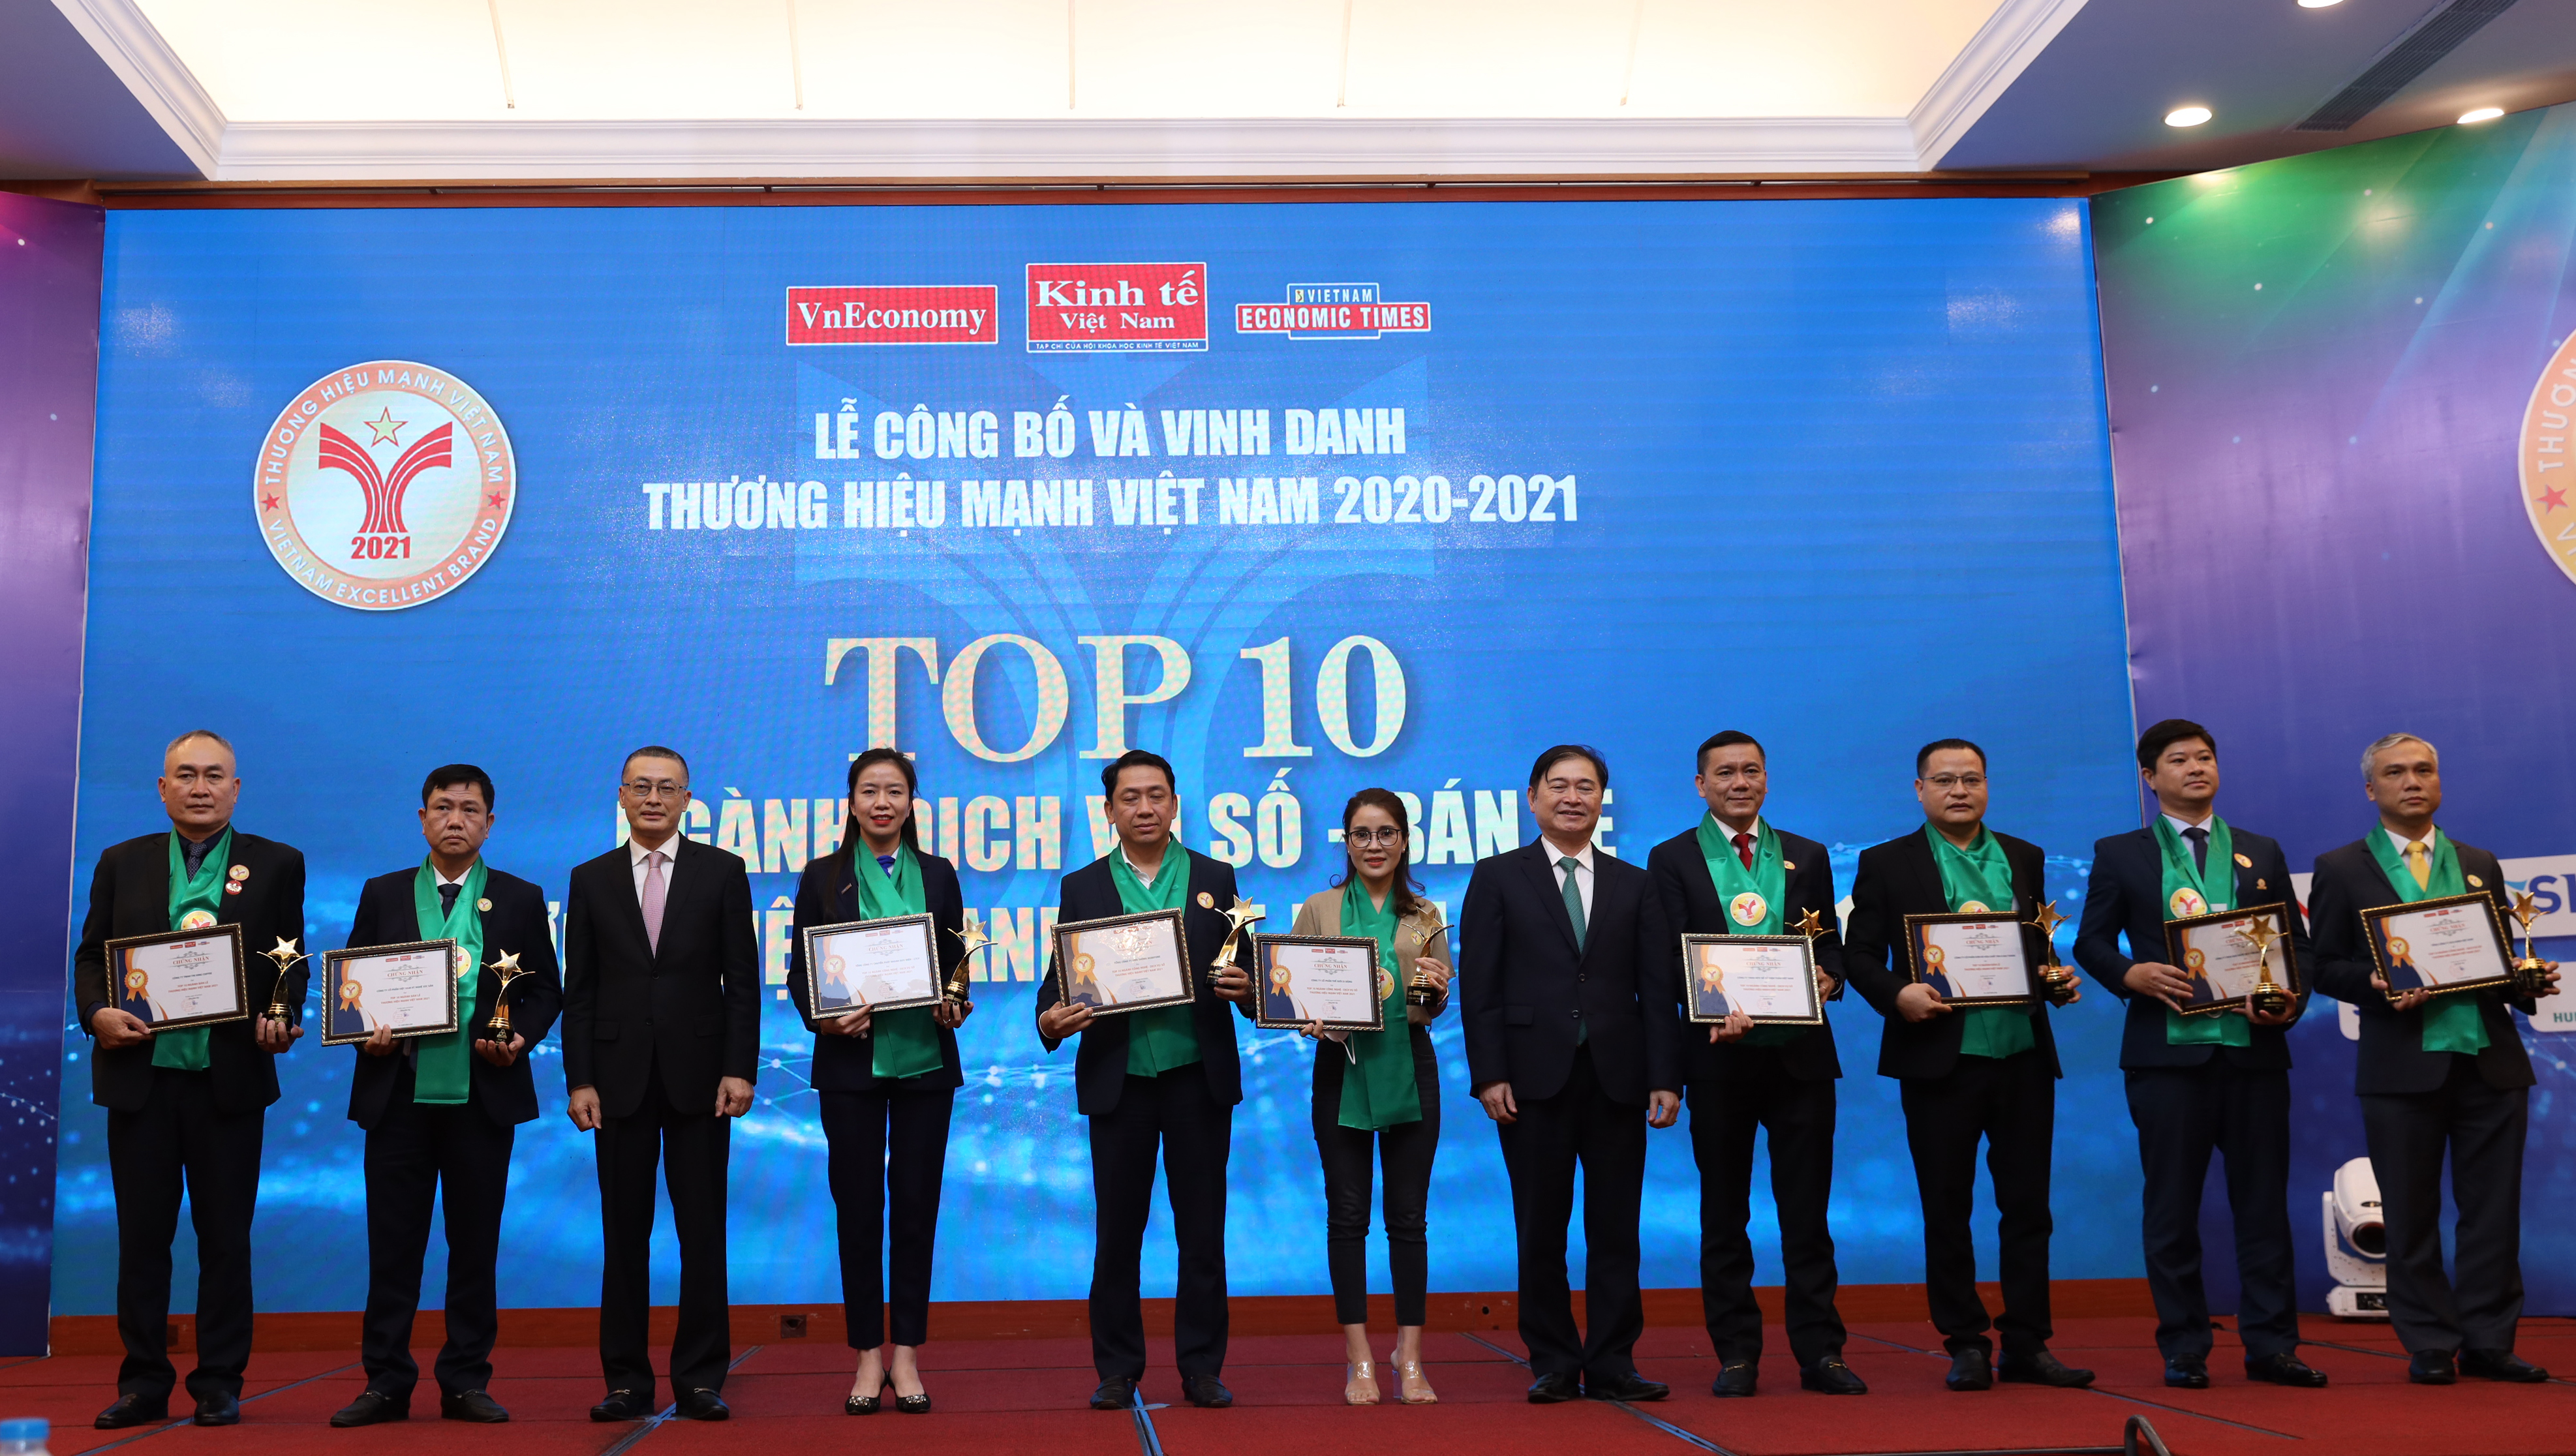 TOP 10 thương hiệu mạnh ngành Công nghệ thông tin, dịch vụ số và Bán lẻ gồm: Tổng công ty Viễn thông MobiFone (MobiFone), Tổng Công ty Chuyển phát nhanh Bưu điện – CTCP (EMS Vietnam), Công ty Cổ phần Thế giới di động, Công ty Xổ số điện toán Việt Nam (Vietlott), Công ty Cổ phần Tập đoàn Tân Á Đại Thành, Công ty Cổ phần Việt Nam Kỹ Nghệ Súc Sản (VISSAN), Công Ty TNHH TNI King Coffee, Công ty TNHH Nhà nước MTV Yến sào Khánh Hòa, Tổng Công Ty Bưu điện Việt Nam (Vietnam Post), và Công ty Cổ phần FPT.